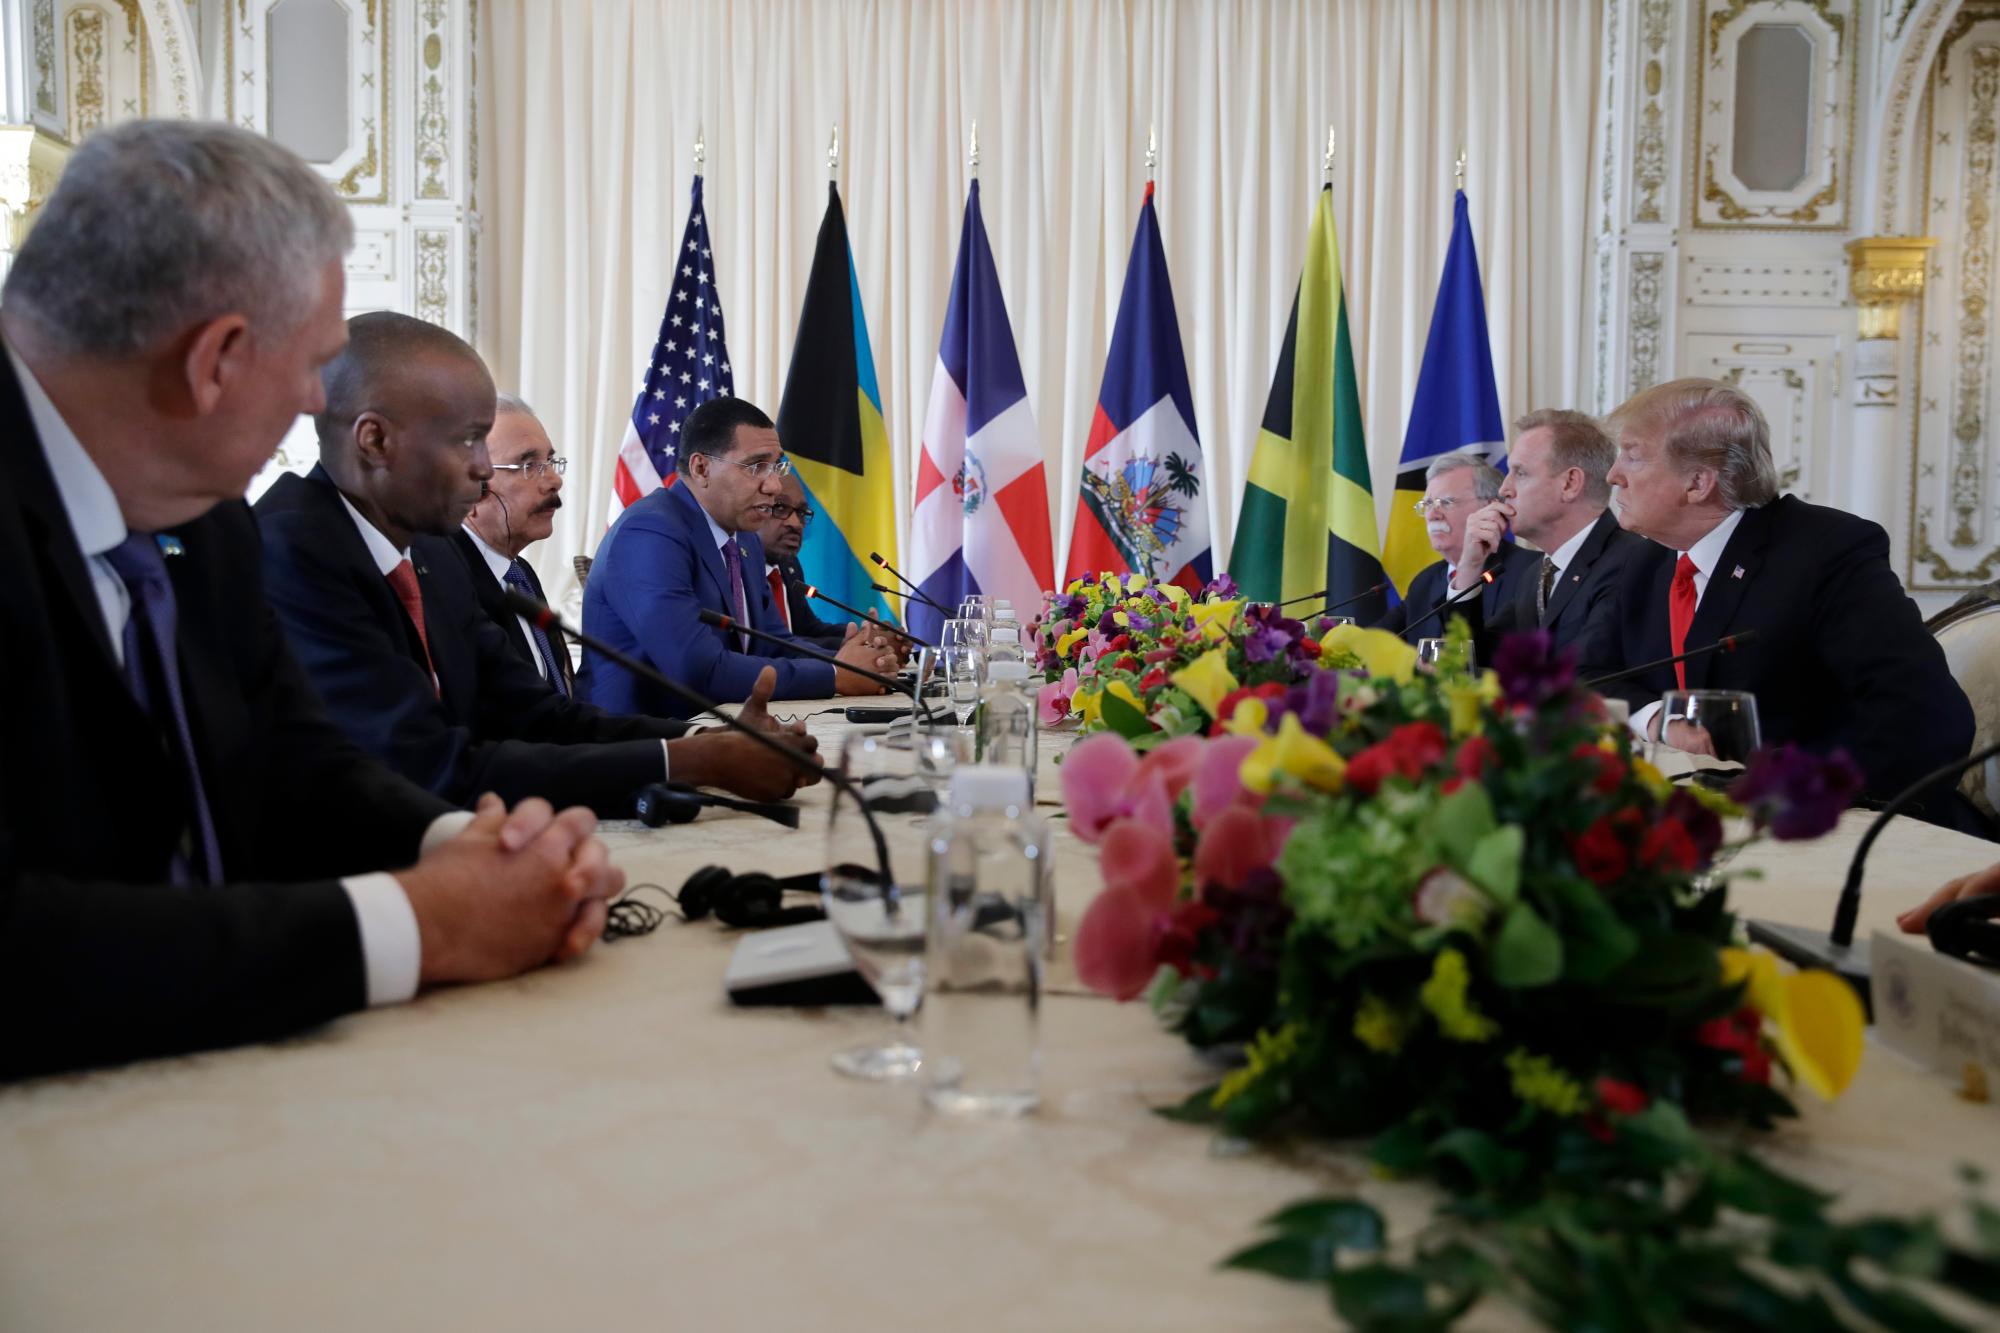 El Presidente Donald Trump, a la derecha, se reúne con los líderes caribeños en Mar-A Lago, el viernes 22 de marzo de 2019, en Palm Beach, FLA. Desde la izquierda se encuentran el primer ministro de Santa Lucía, Allen Michael Chastanet, el Presidente de Haití, Jovenel Moise, el Presidente de la República Dominicana, Danilo Medina, el primer ministro de Jamaica Andrew Holness y el primer ministro de Bahama, Hubert Minnis.